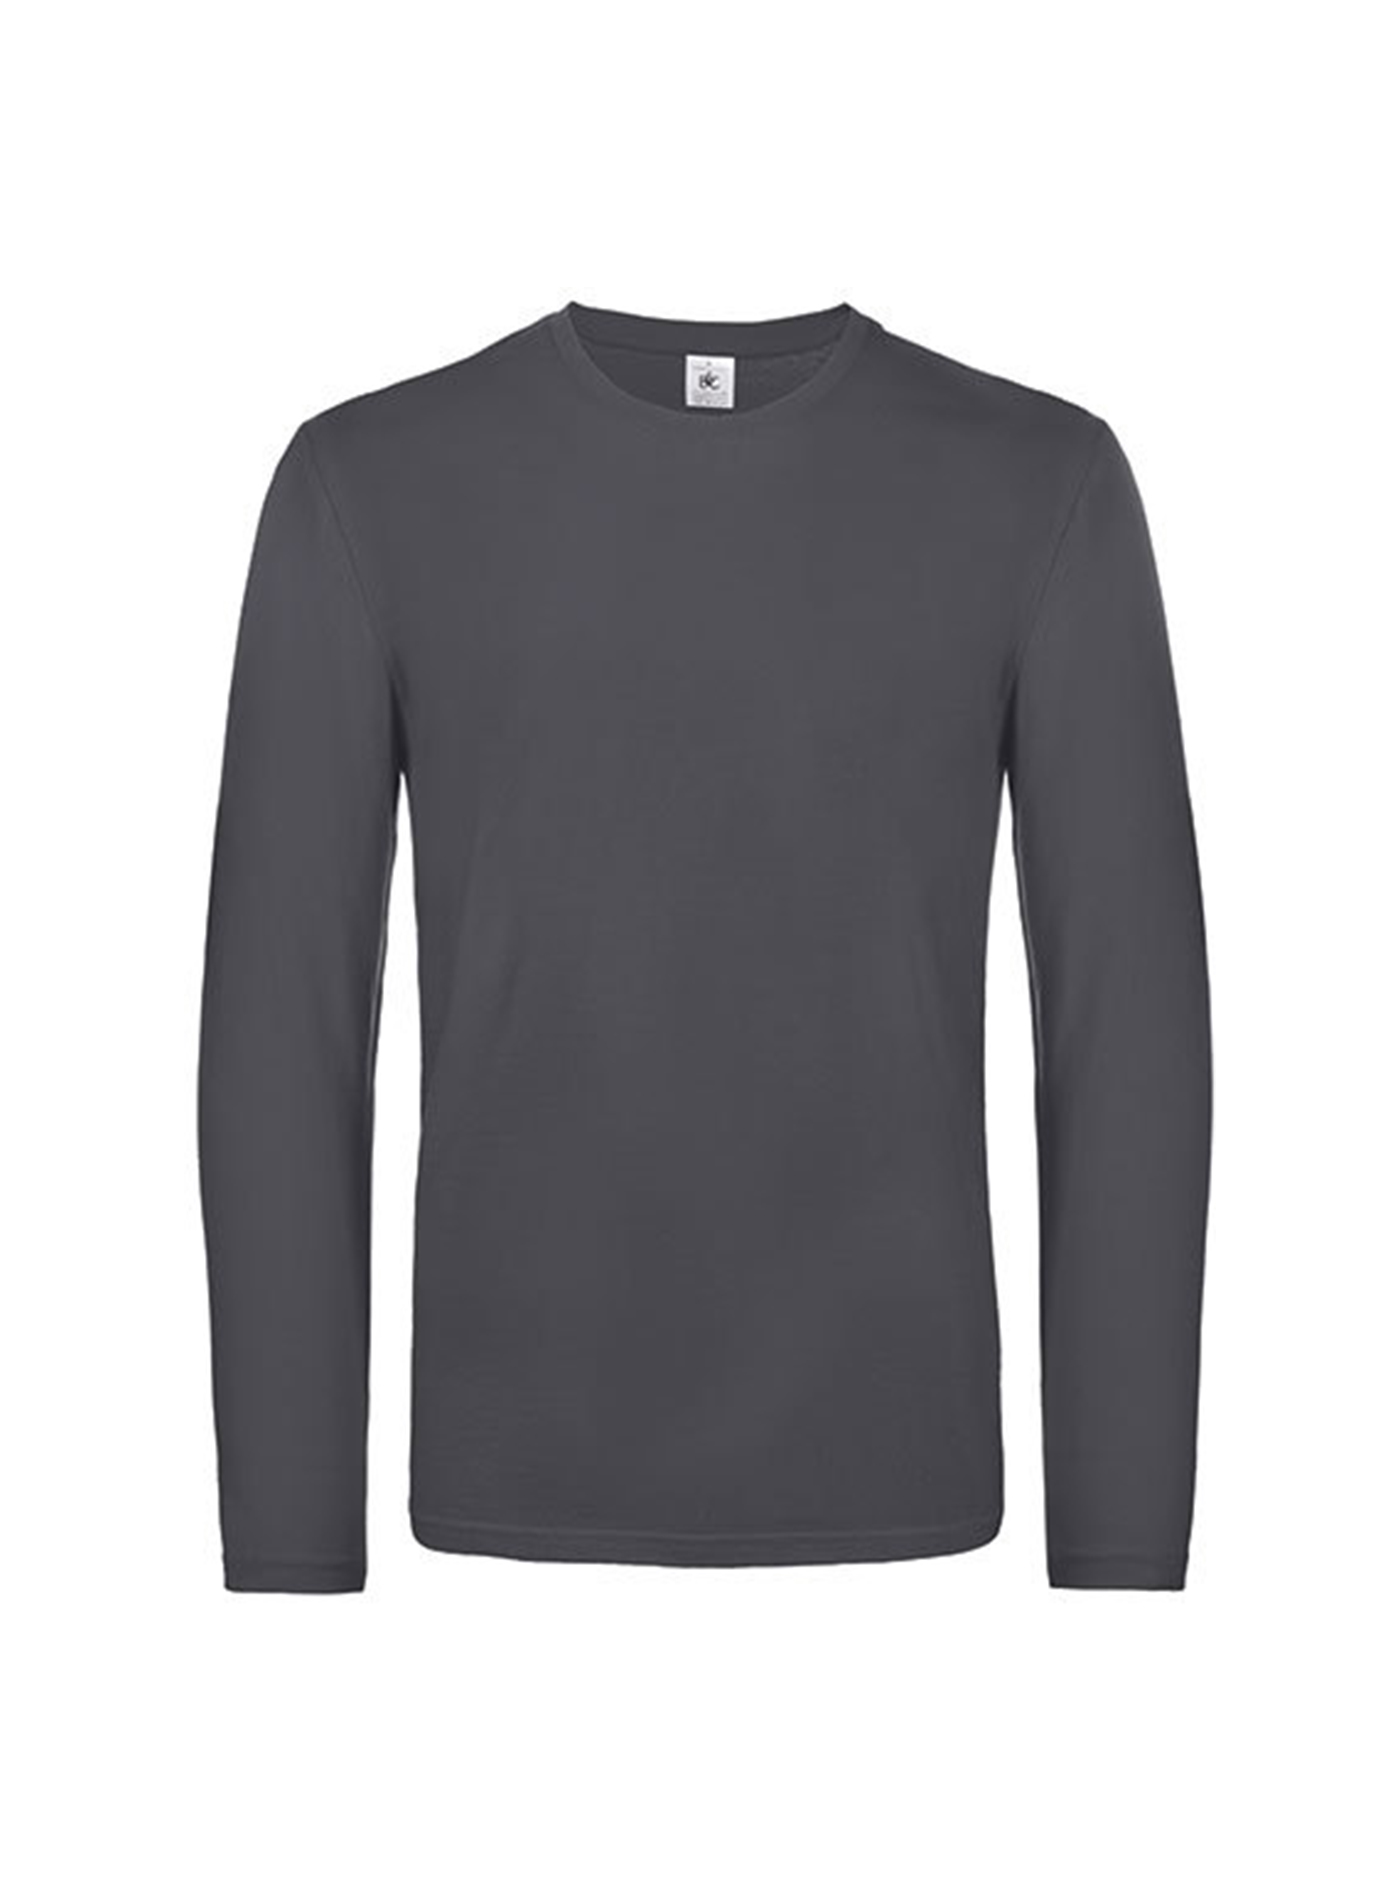 Pánské tričko s dlouhým rukávem B&C Collection - Sytě šedá XL